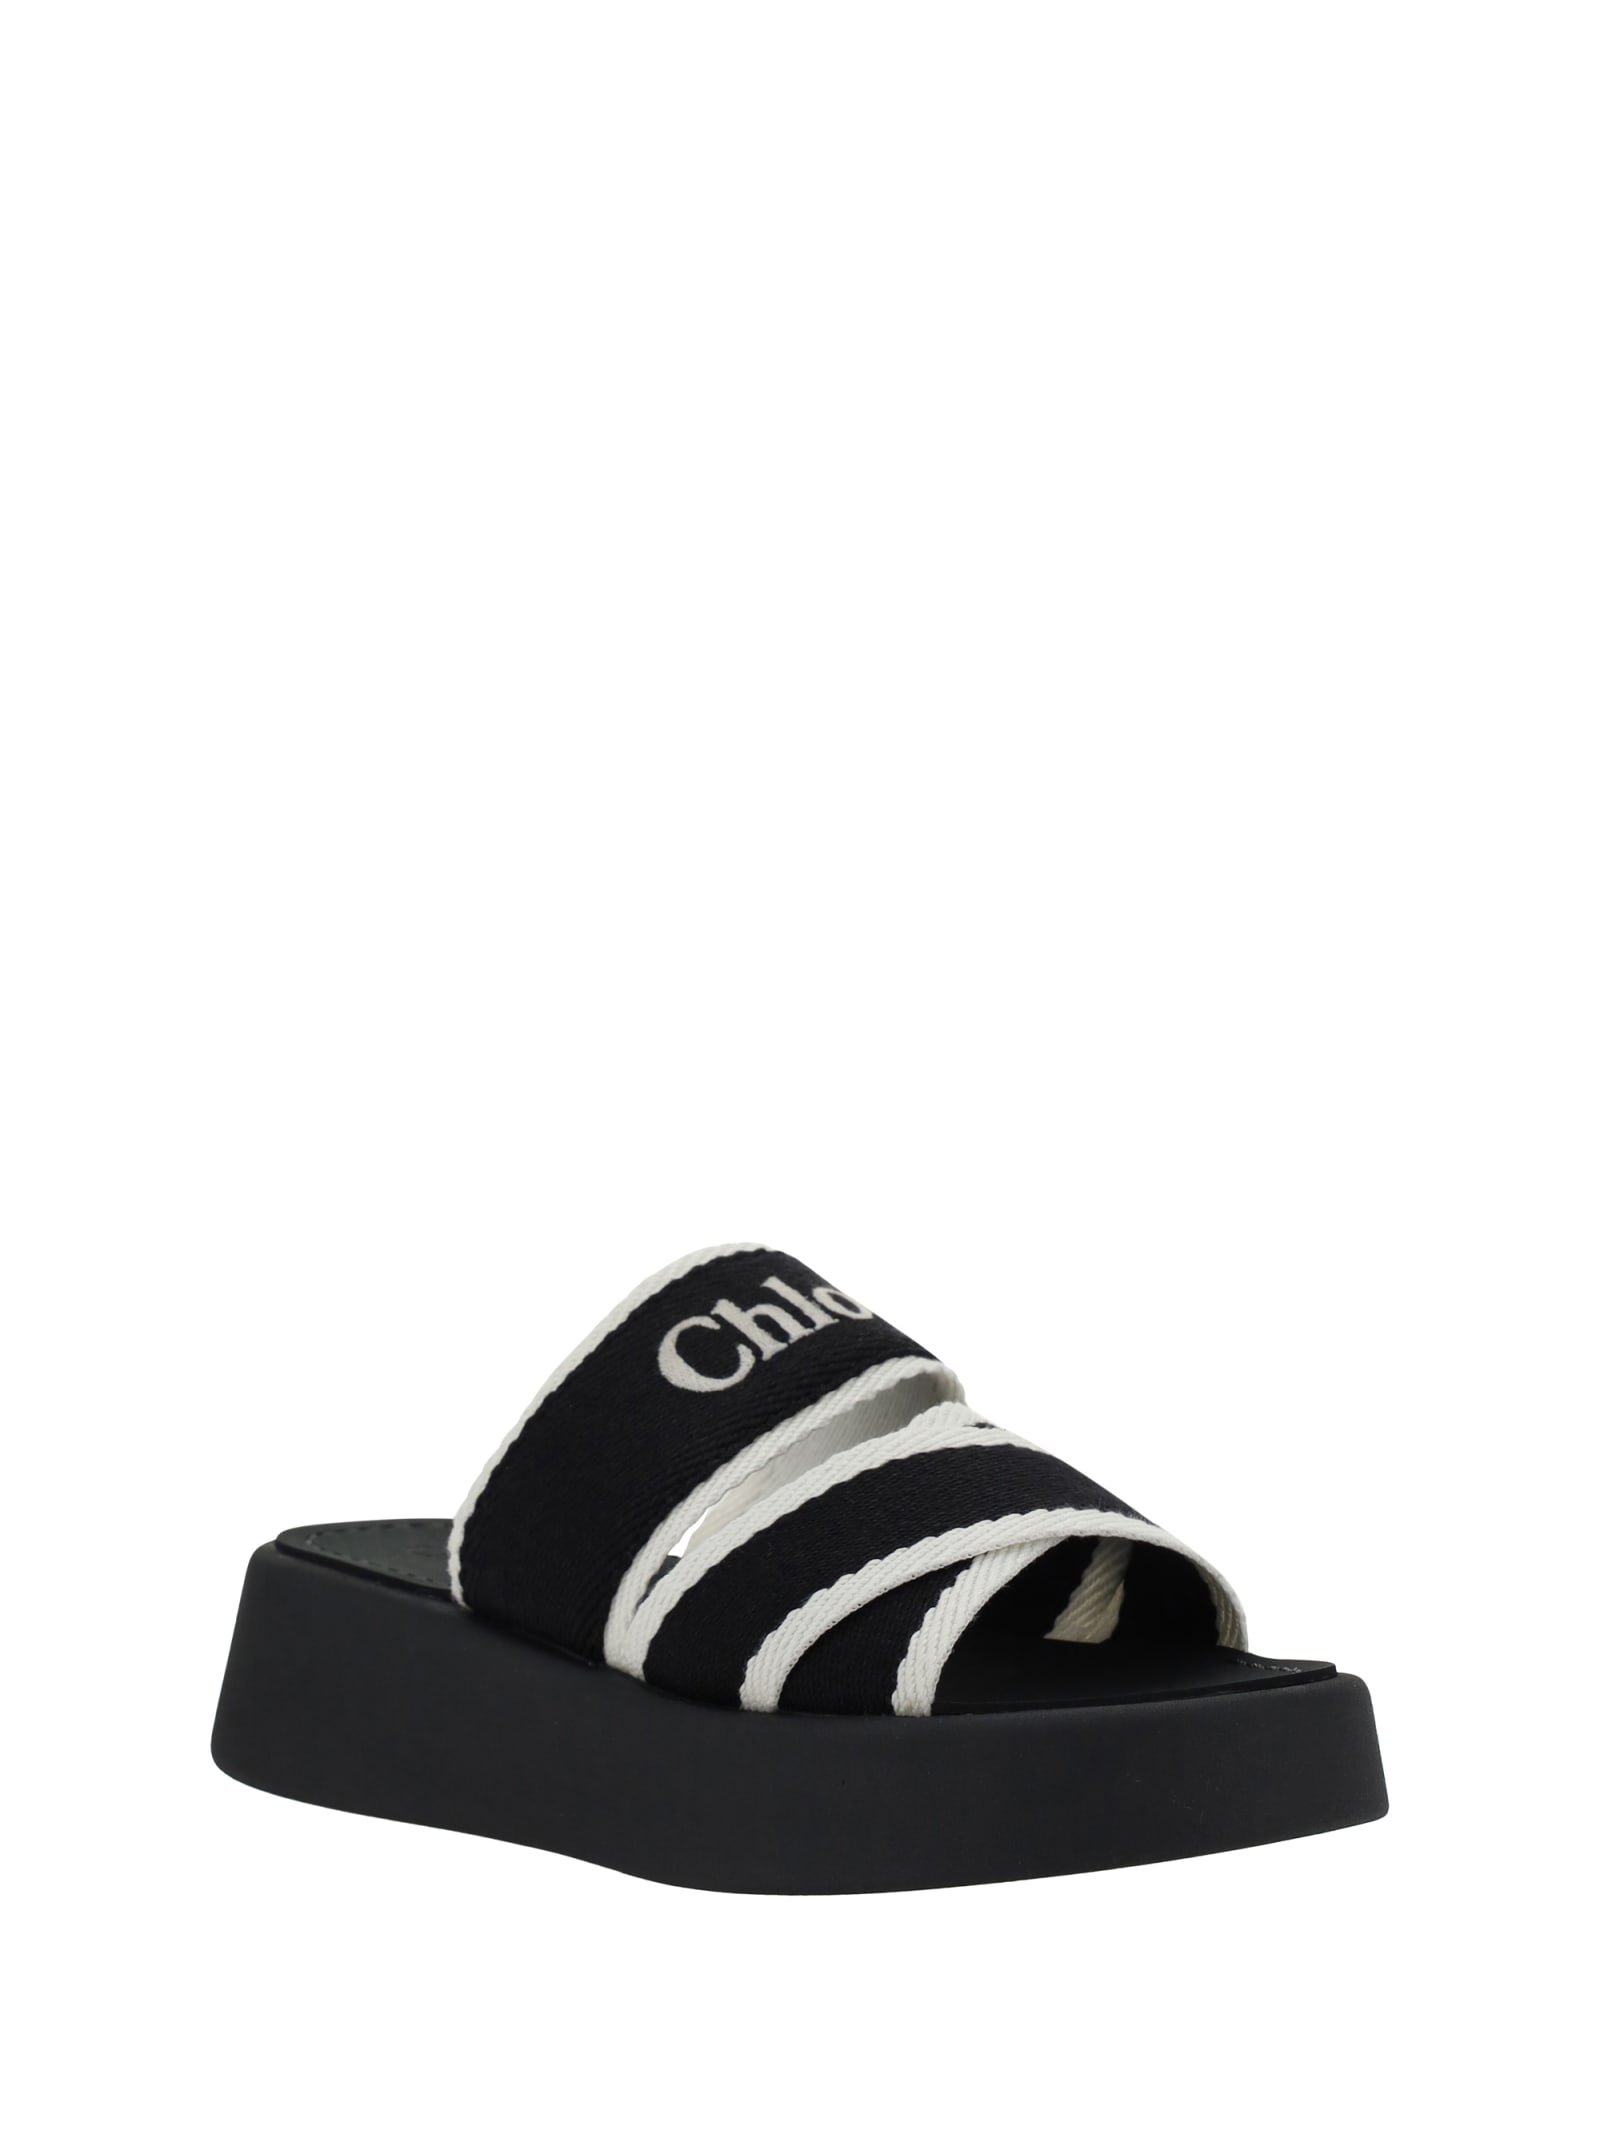 Shop Chloé Mila Sandals In K White Black